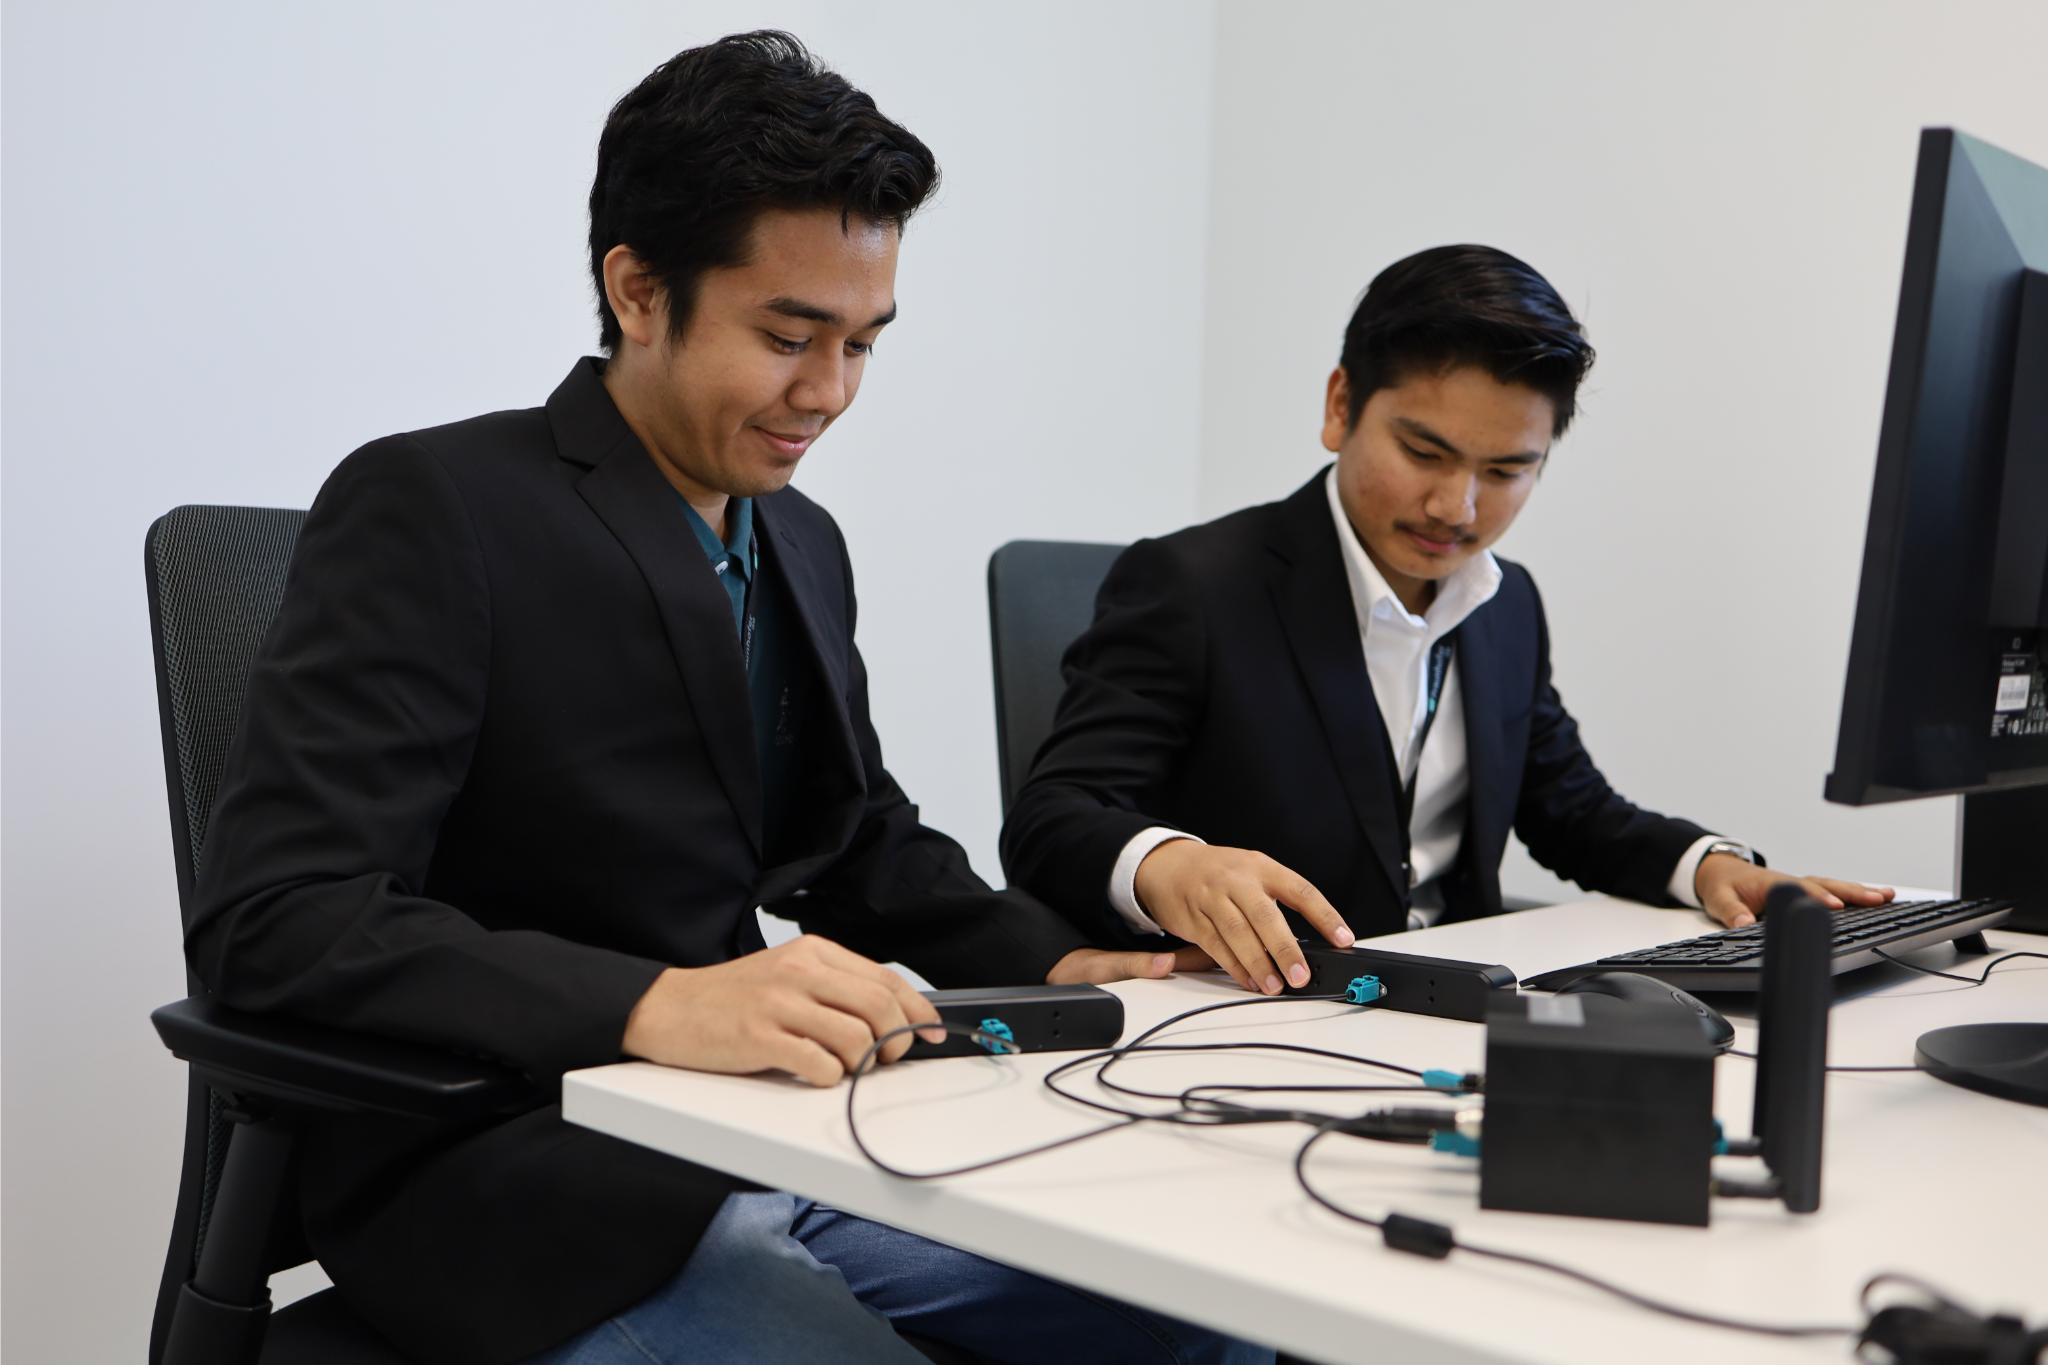 Praktikanten arbeiten gemeinsam an einem Computer.